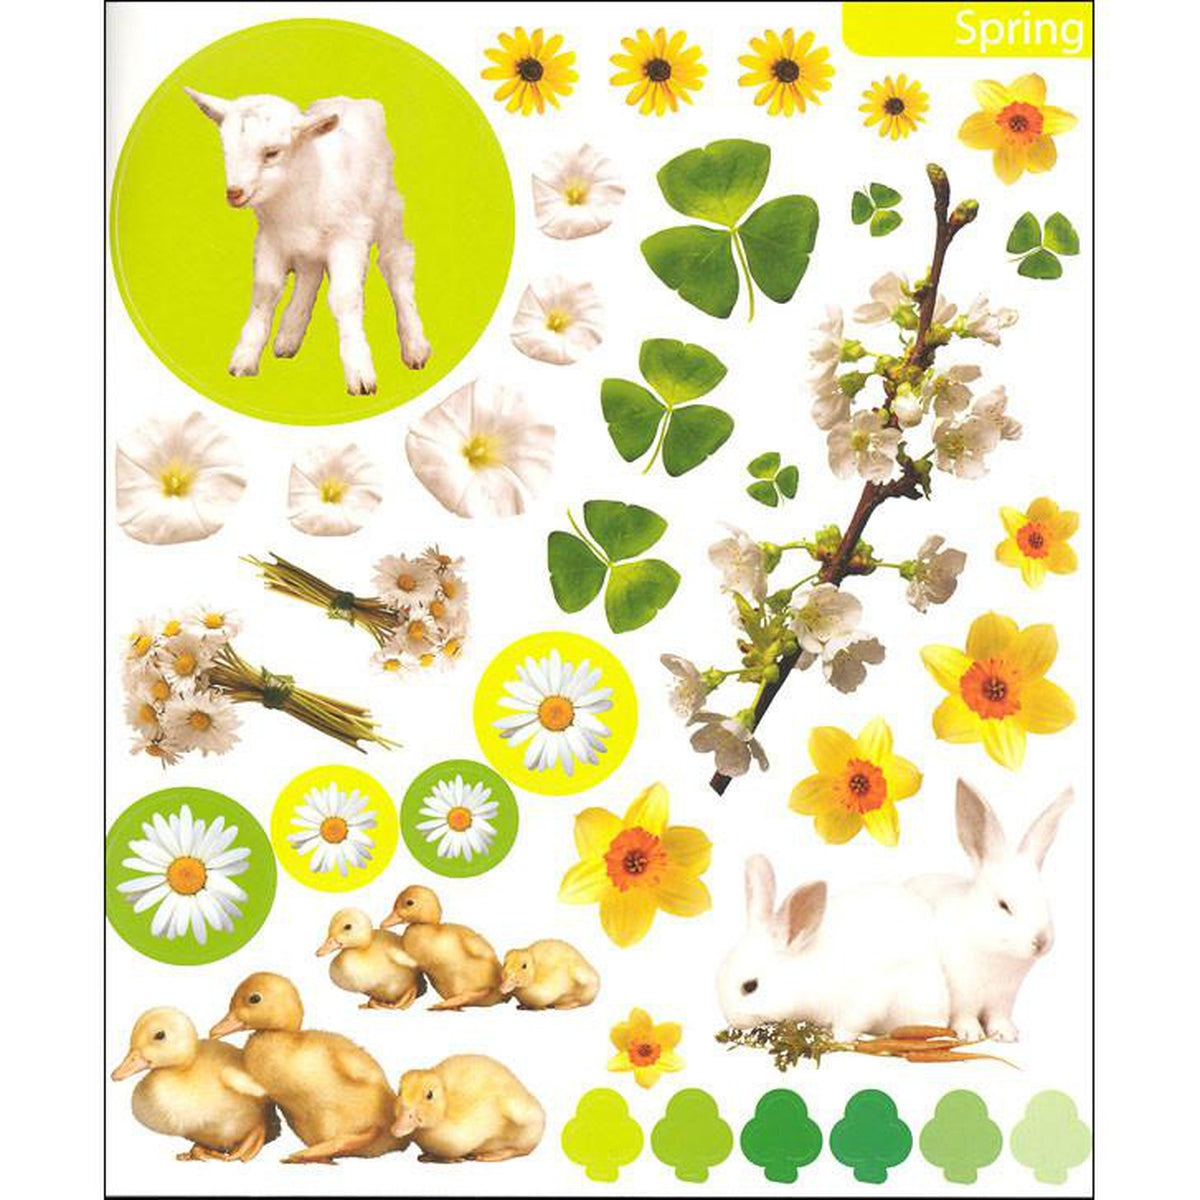 Eyelike Seasons sticker book